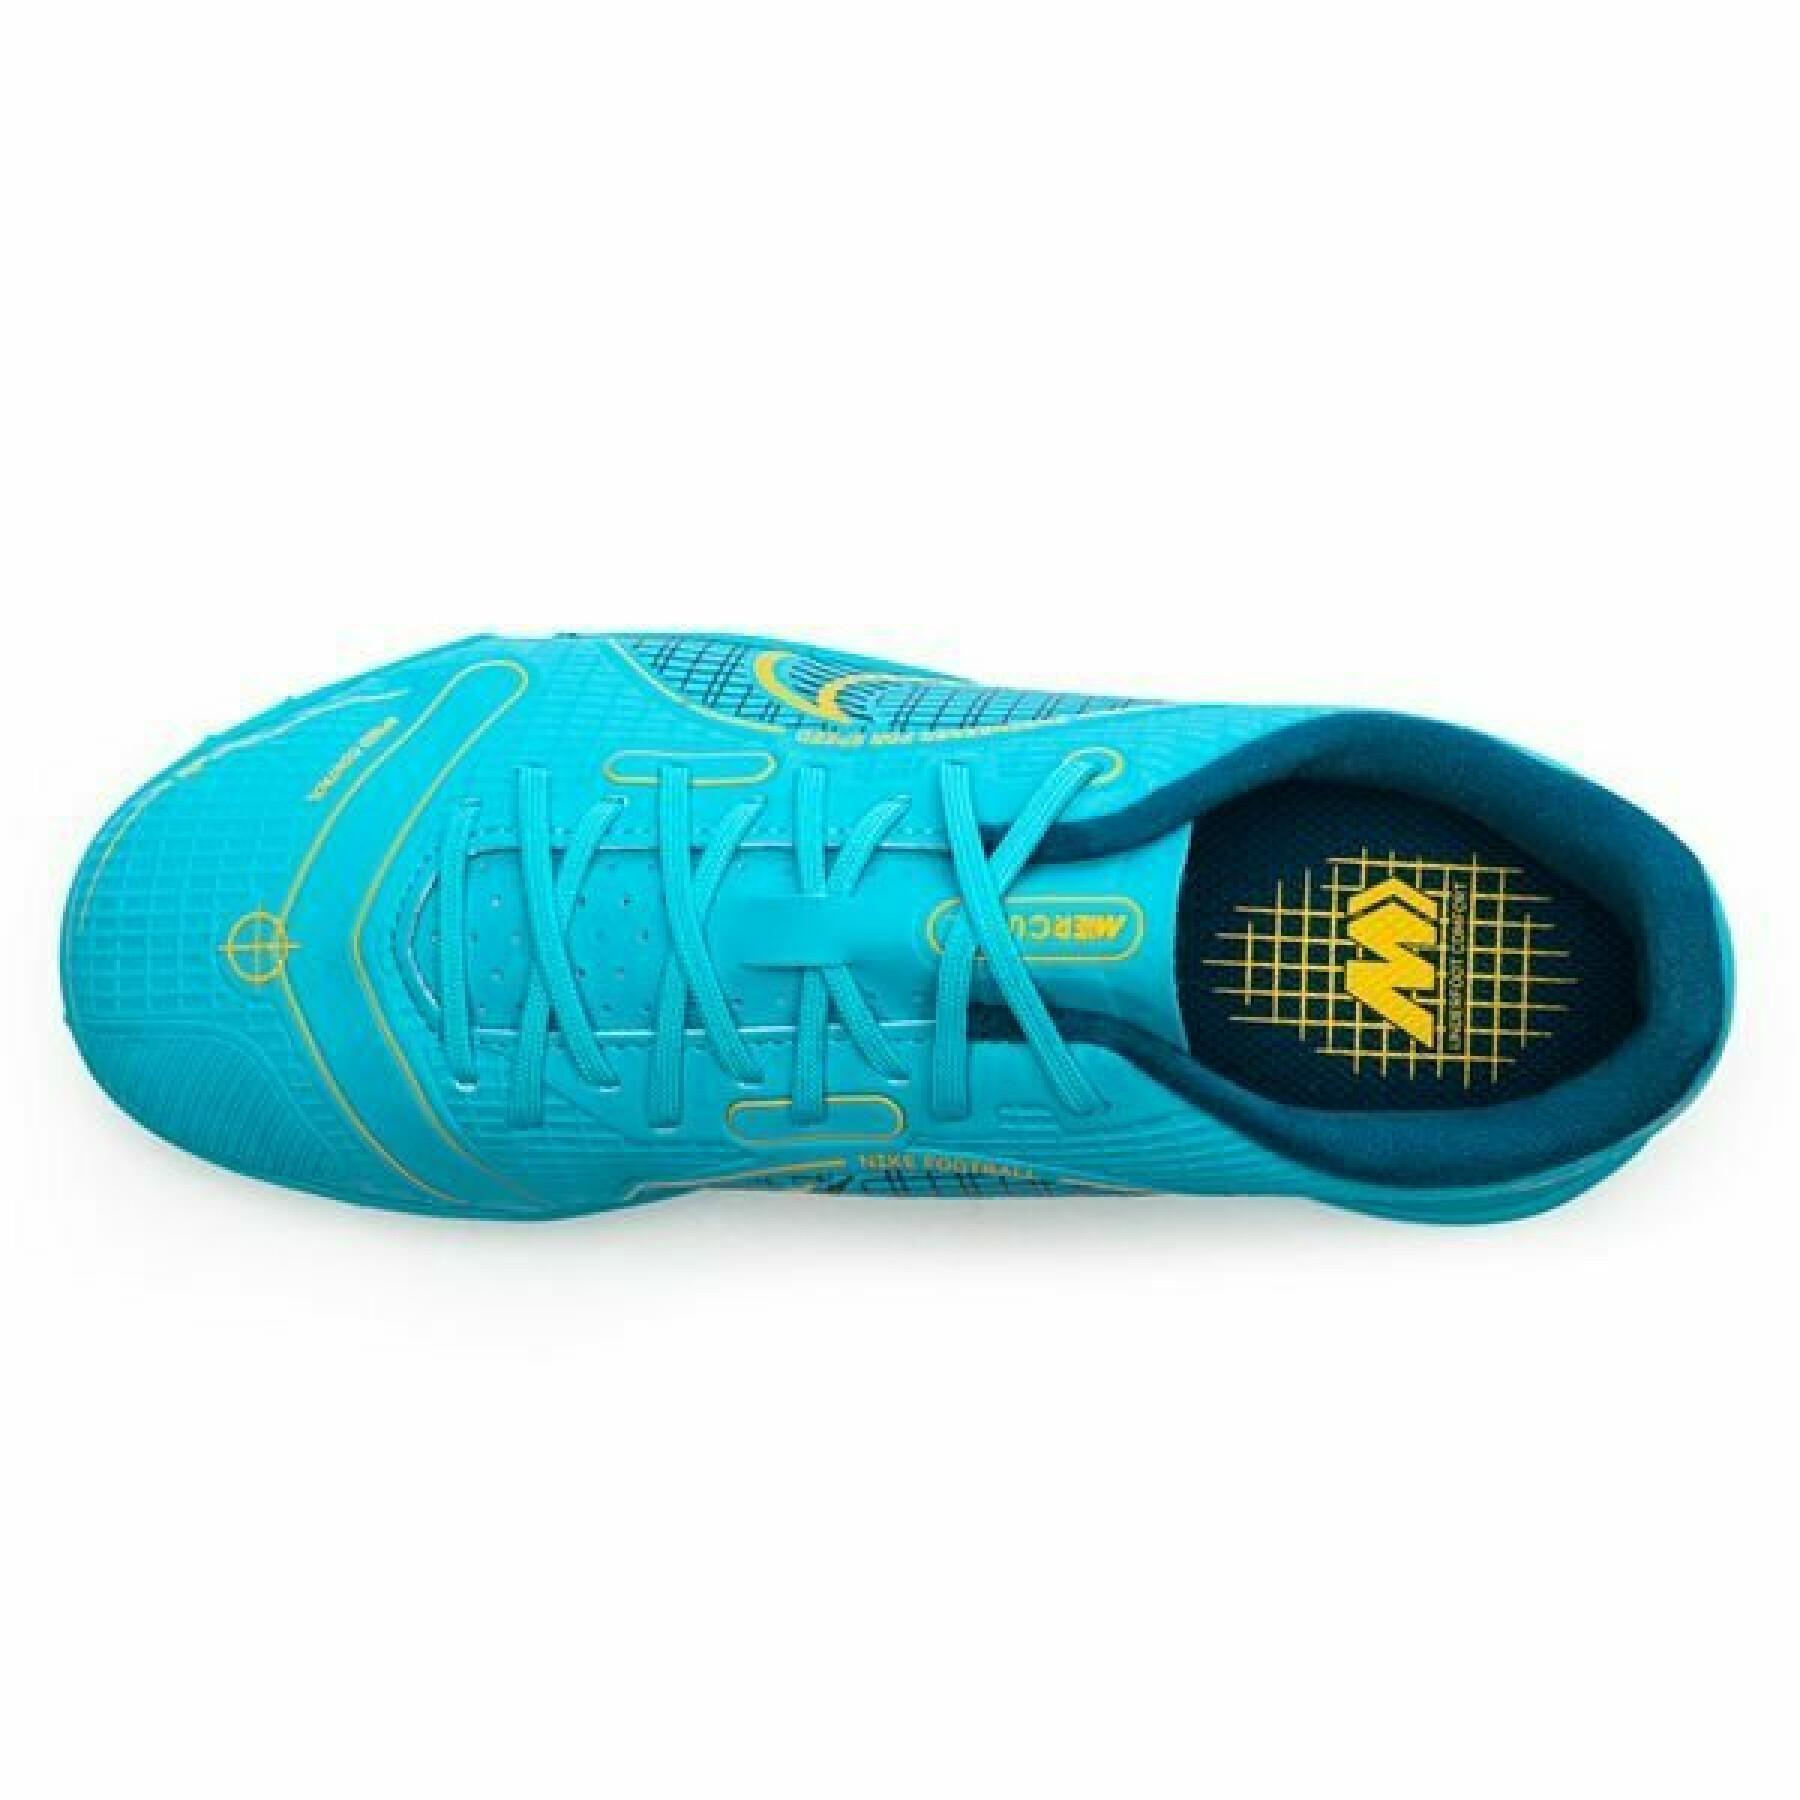 Sapatos de futebol para crianças Nike Jr vapor 14 academy TF -Blueprint Pack